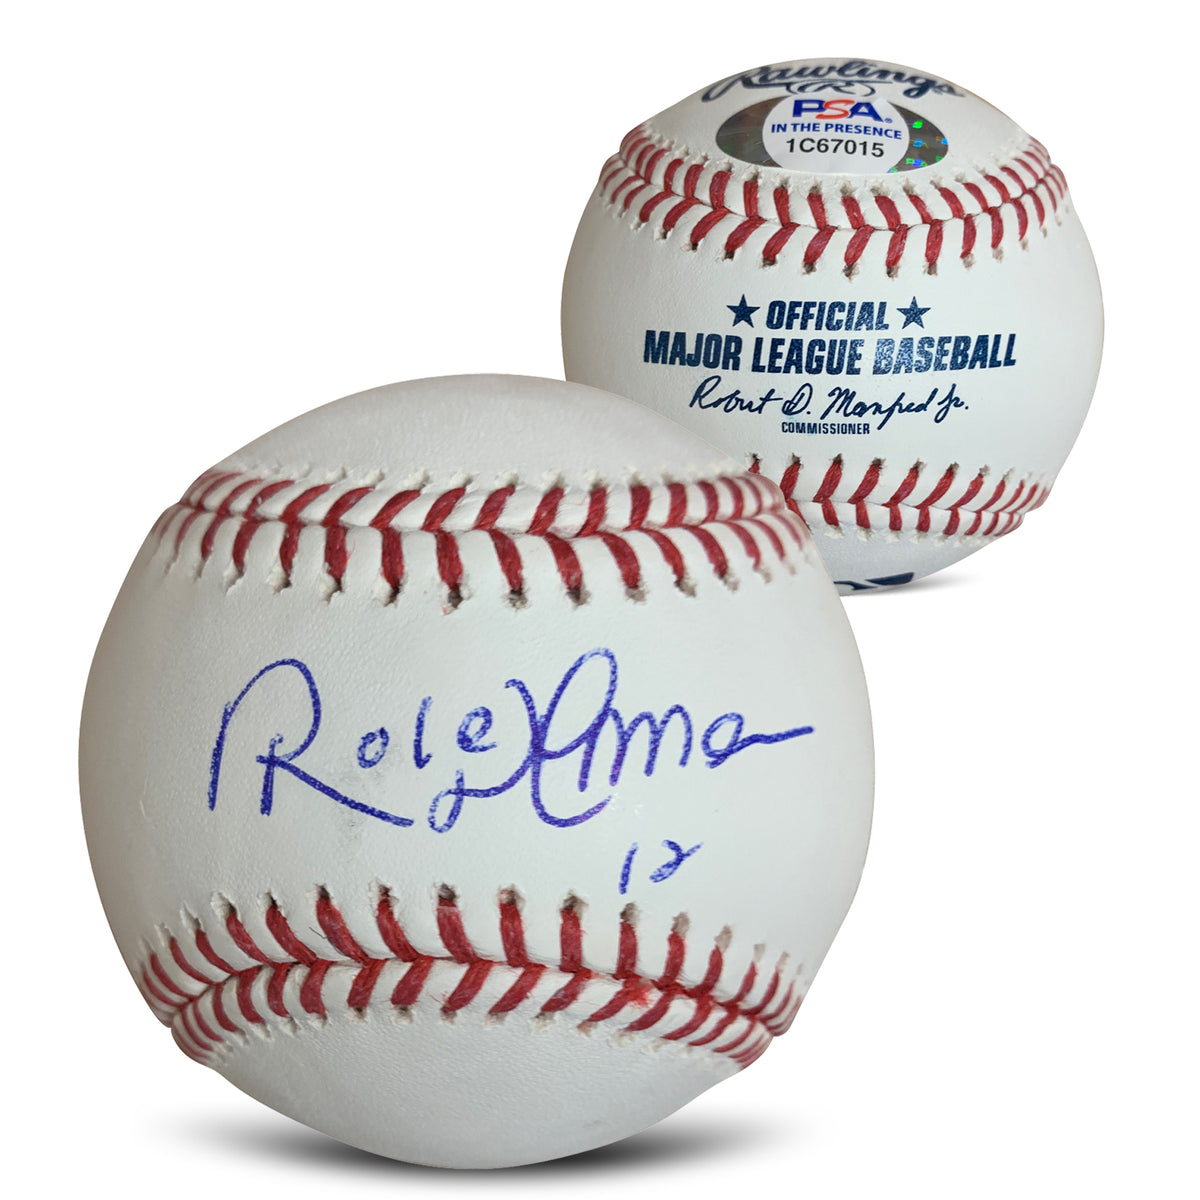 Autographed Major League Baseball